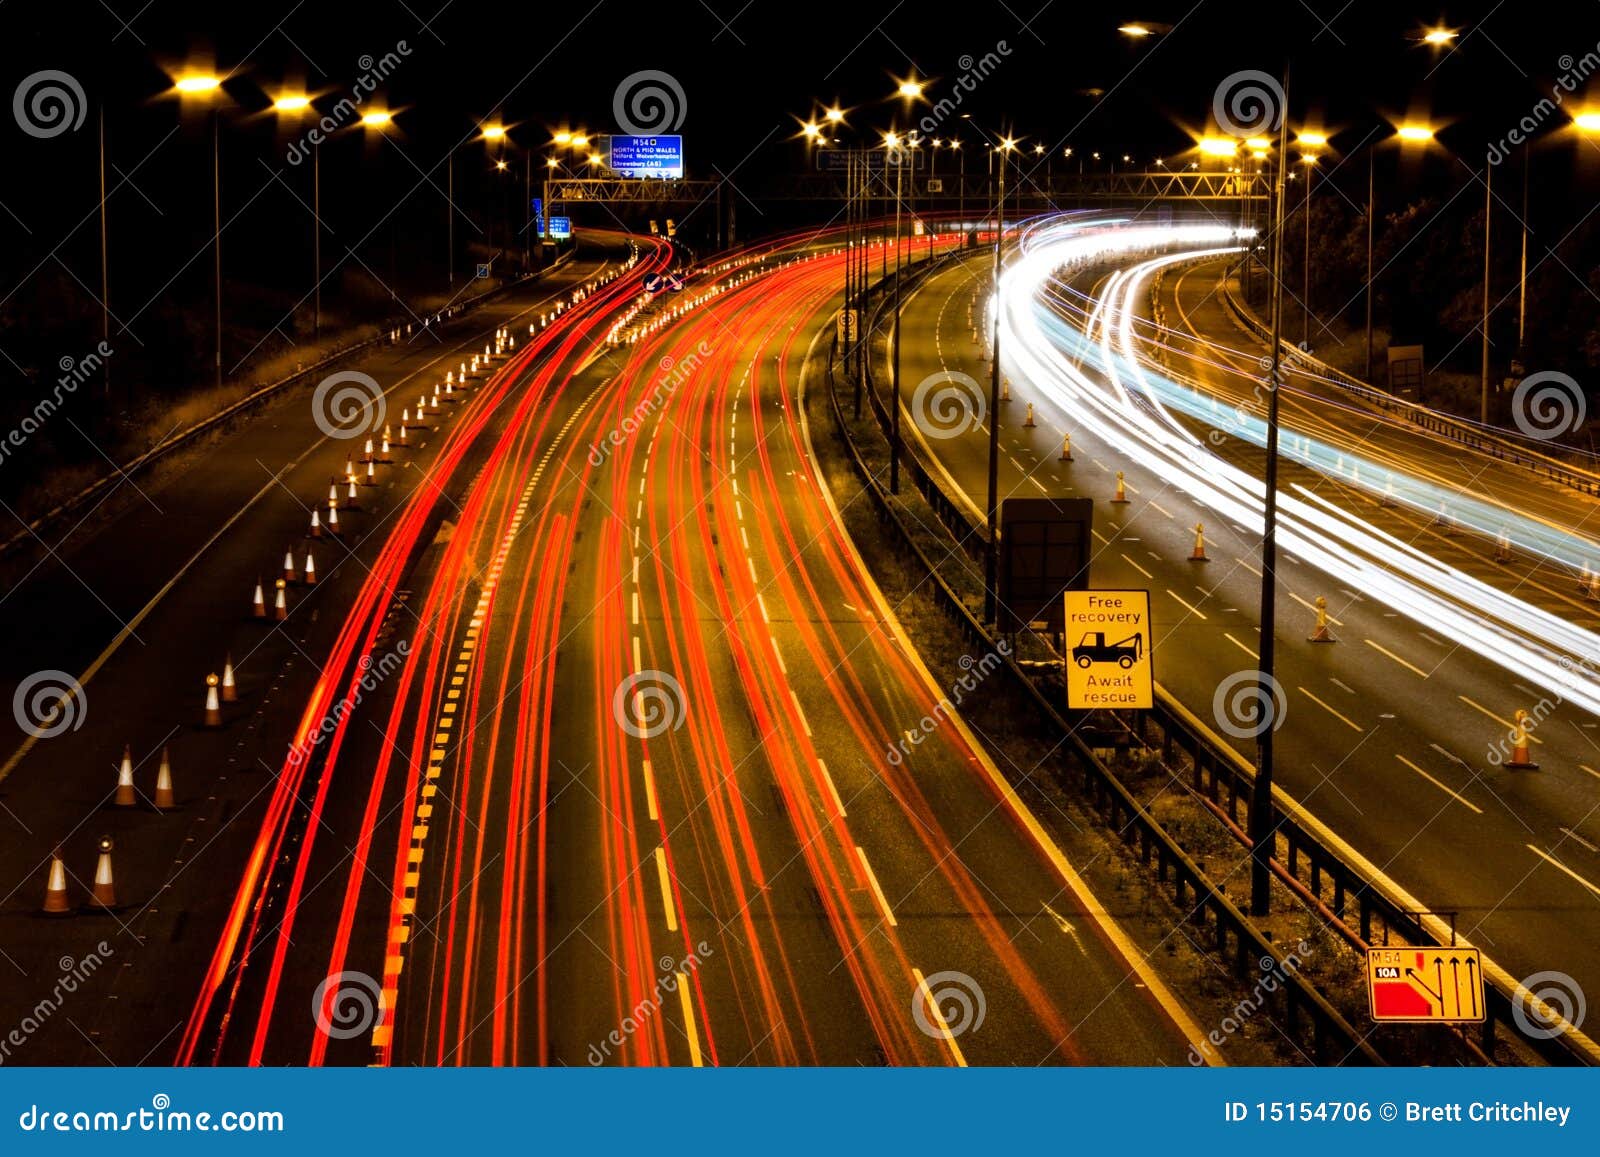 m6 motorway at night